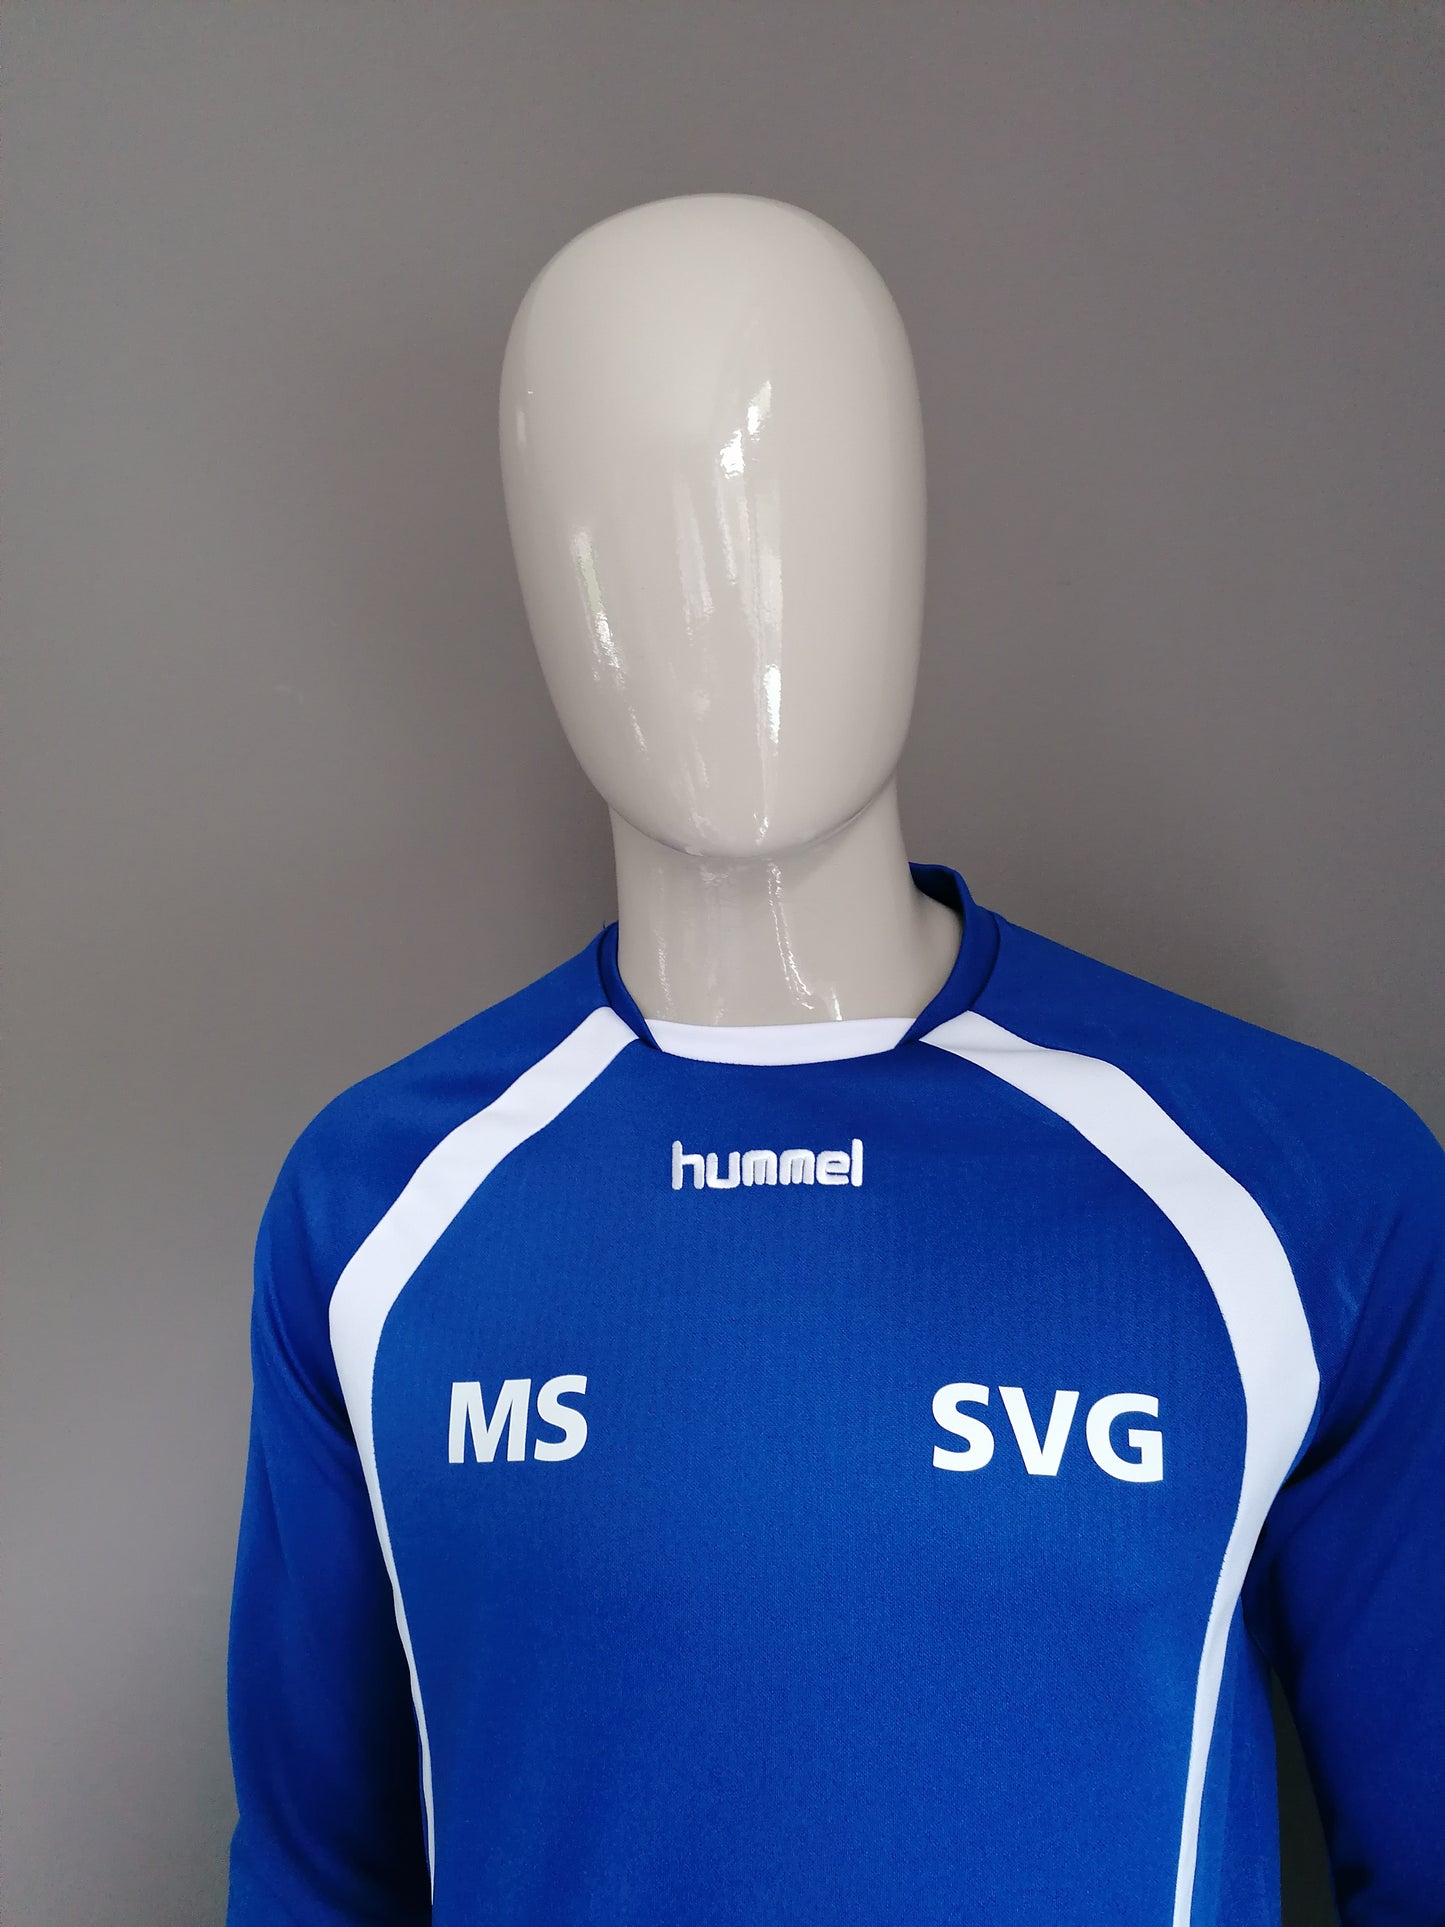 Hummel "SVG" sport trui. Blauw Wit gekleurd. Maat M.